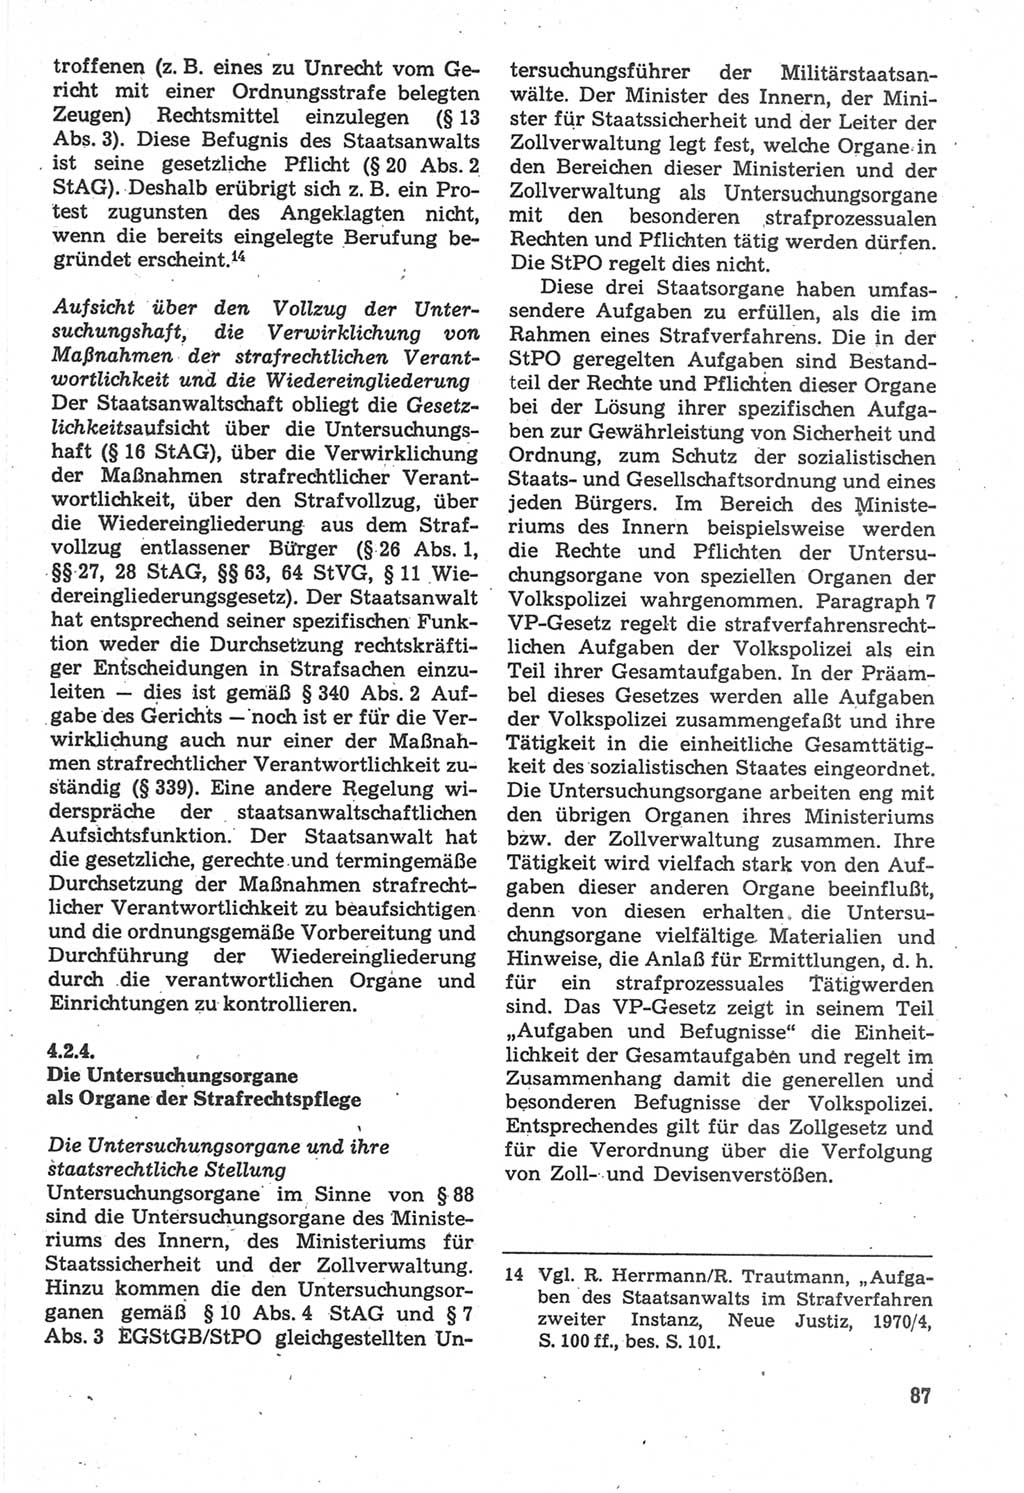 Strafverfahrensrecht [Deutsche Demokratische Republik (DDR)], Lehrbuch 1987, Seite 87 (Strafverf.-R. DDR Lb. 1987, S. 87)